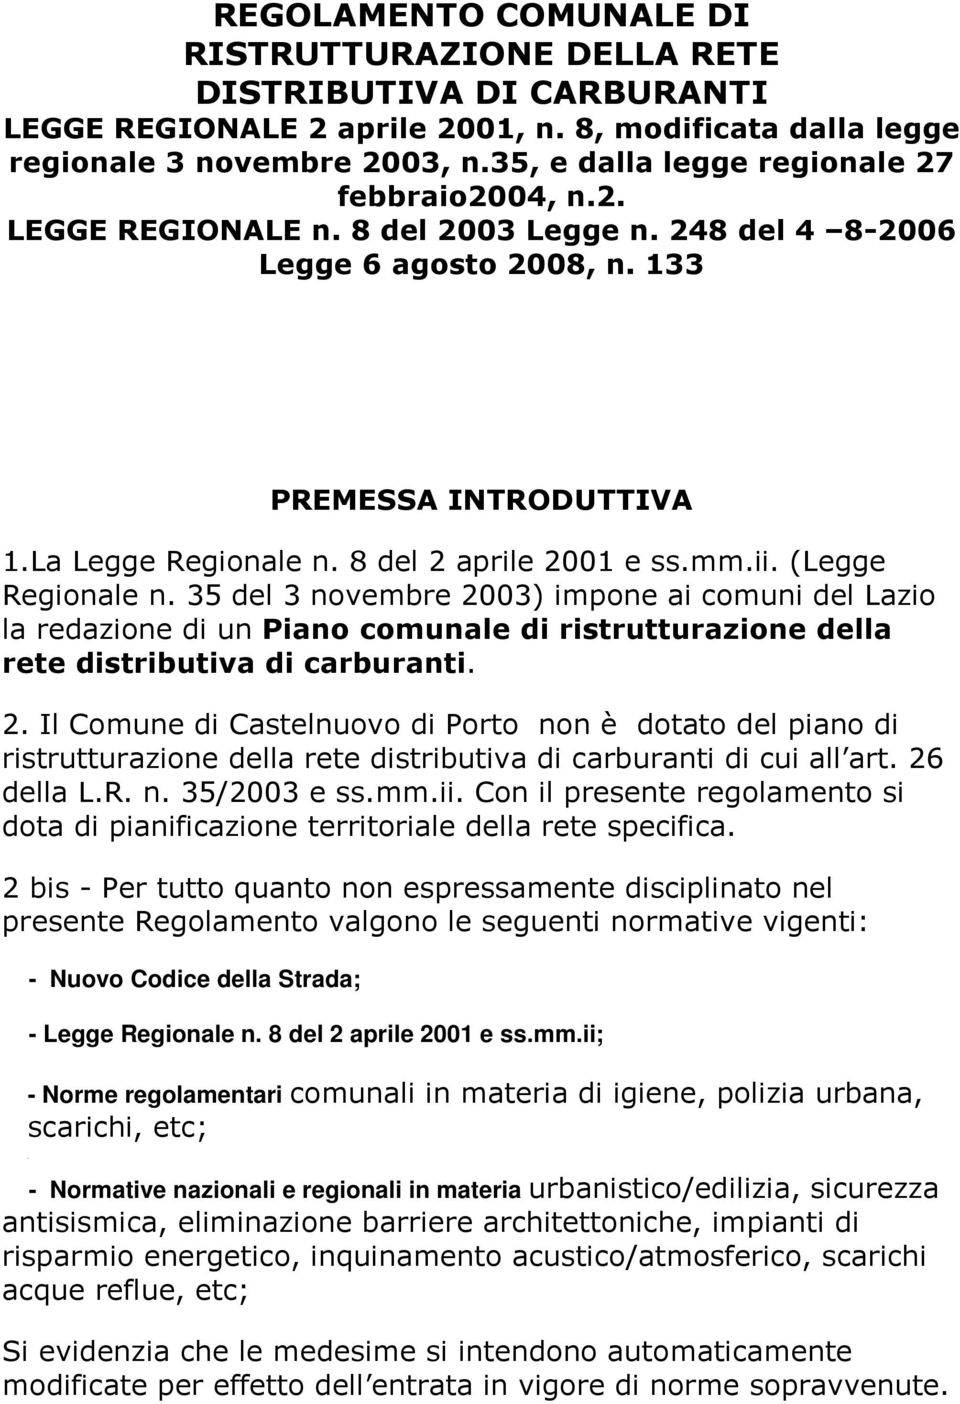 8 del 2 aprile 2001 e ss.mm.ii. (Legge Regionale n. 35 del 3 novembre 2003) impone ai comuni del Lazio la redazione di un Piano comunale di ristrutturazione della rete distributiva di carburanti. 2. Il Comune di Castelnuovo di Porto non è dotato del piano di ristrutturazione della rete distributiva di carburanti di cui all art.